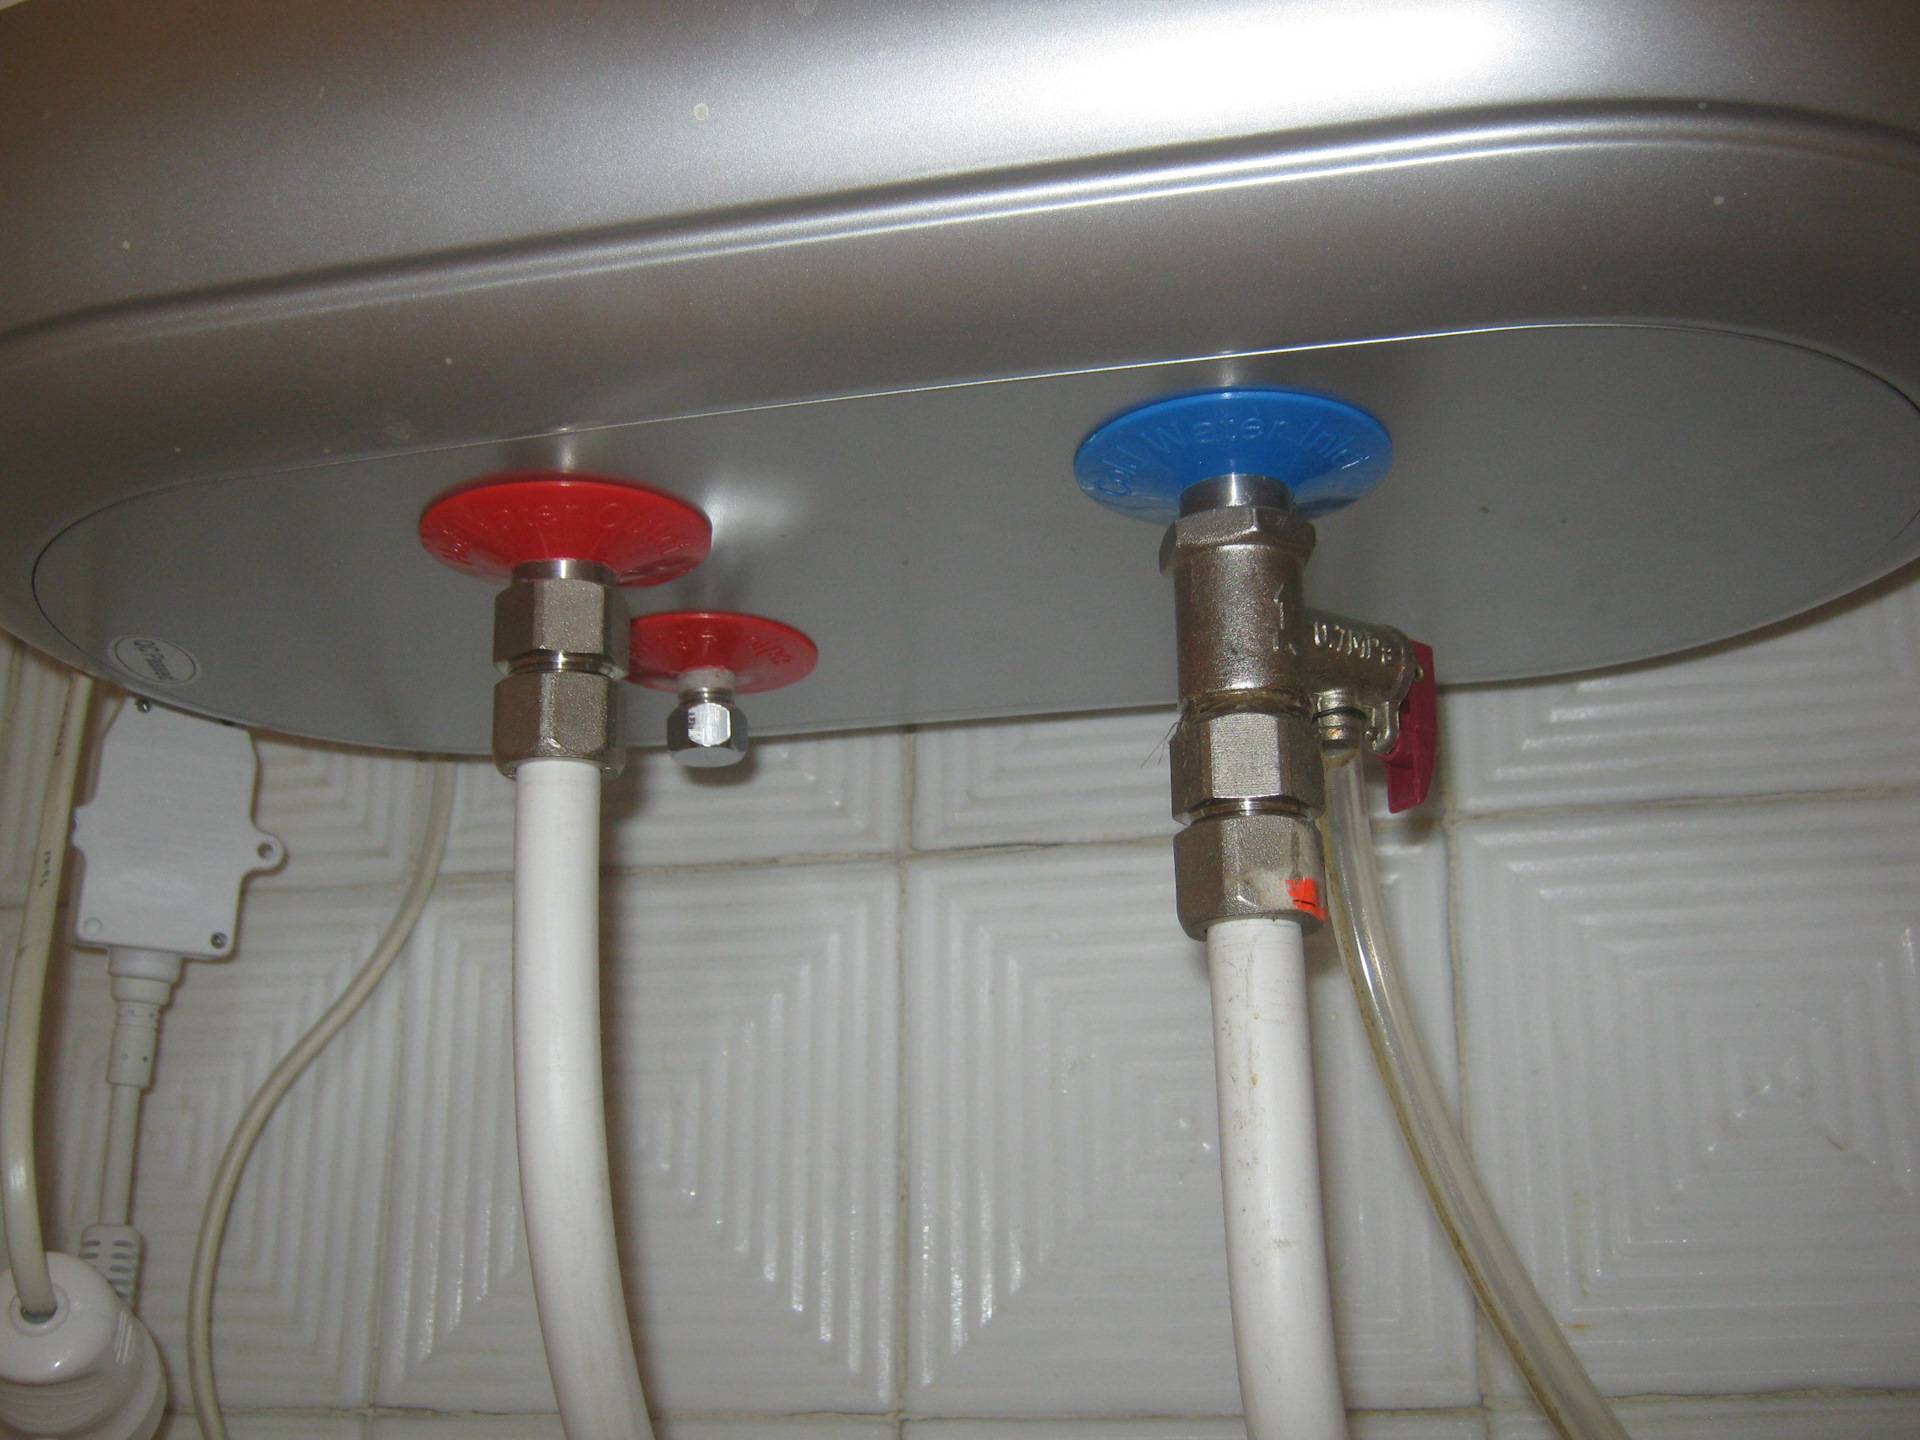 Как слить воду из бойлера: пошаговые инструкции для водонагревателей разных производителей